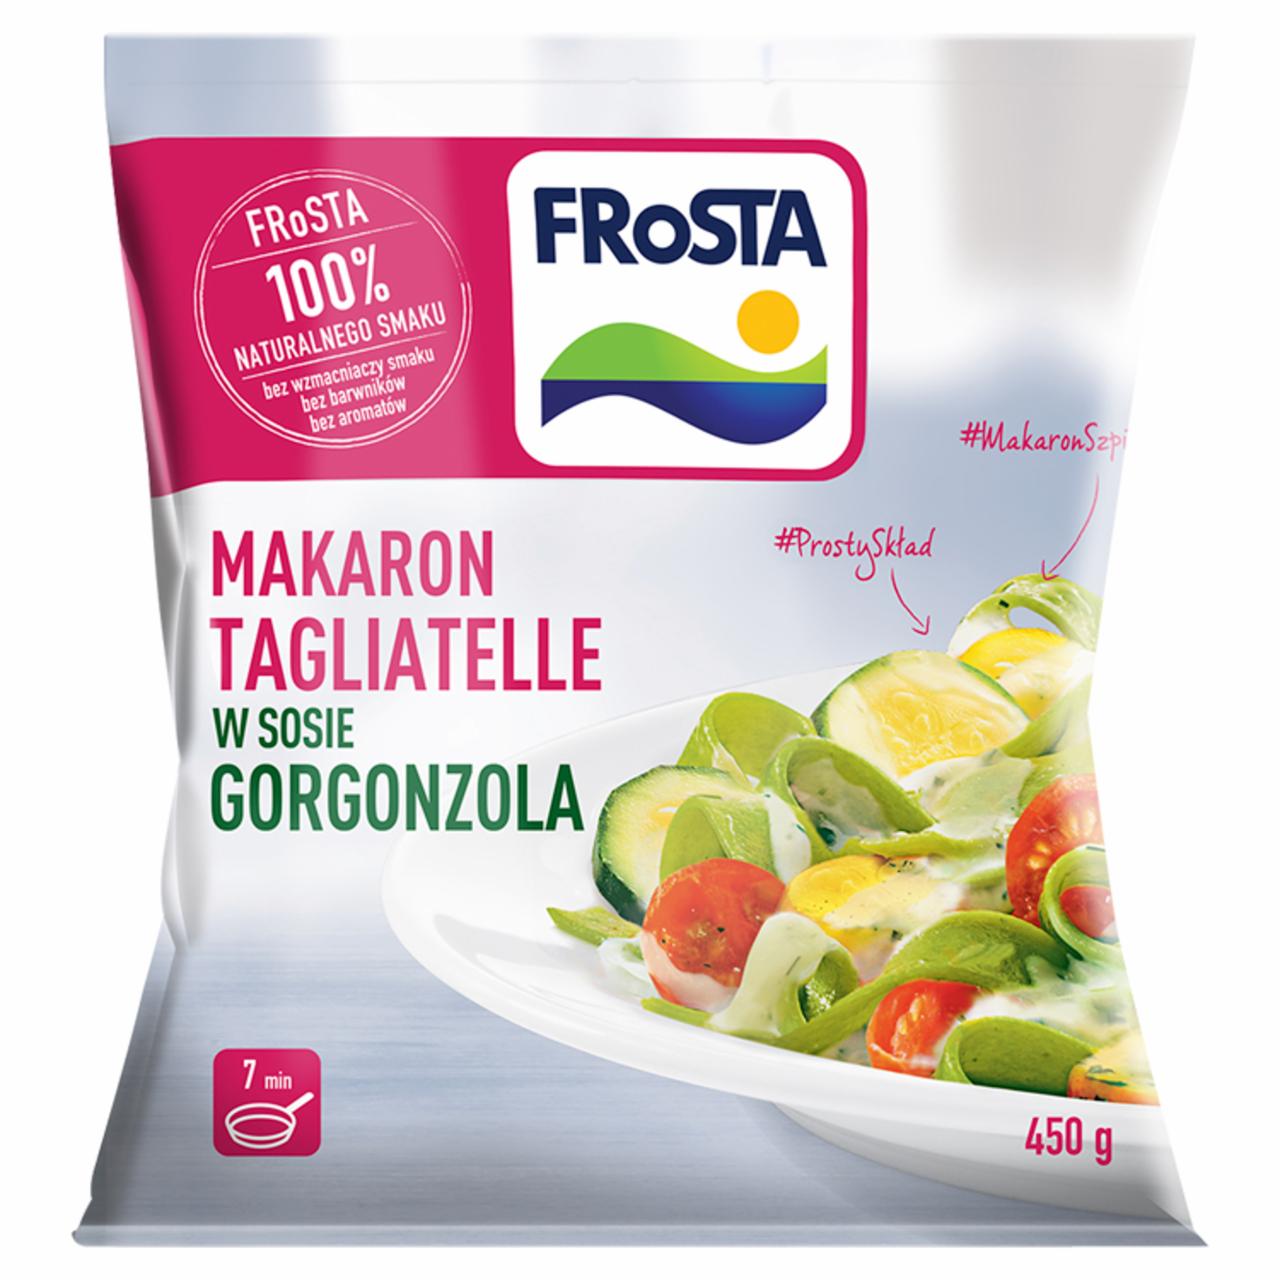 Zdjęcia - FRoSTA Makaron tagliatelle w sosie Gorgonzola 450 g